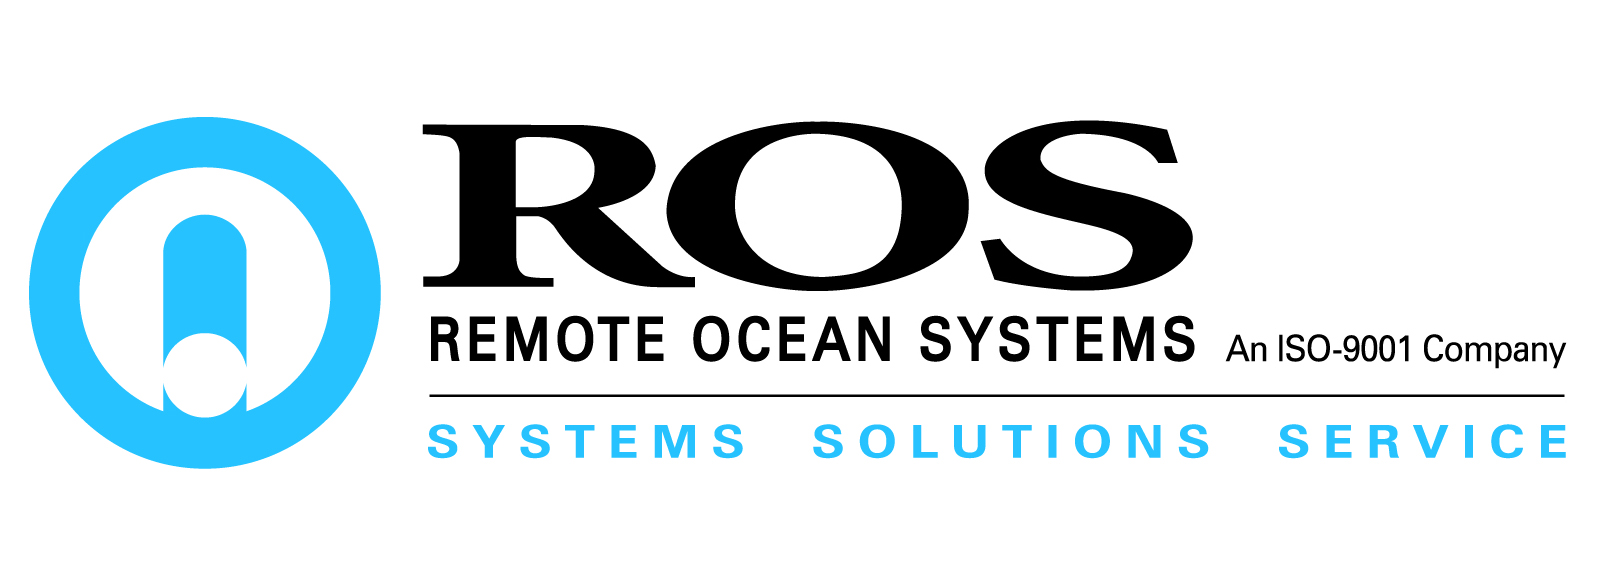 Remote Ocean Systems (ROS) logo